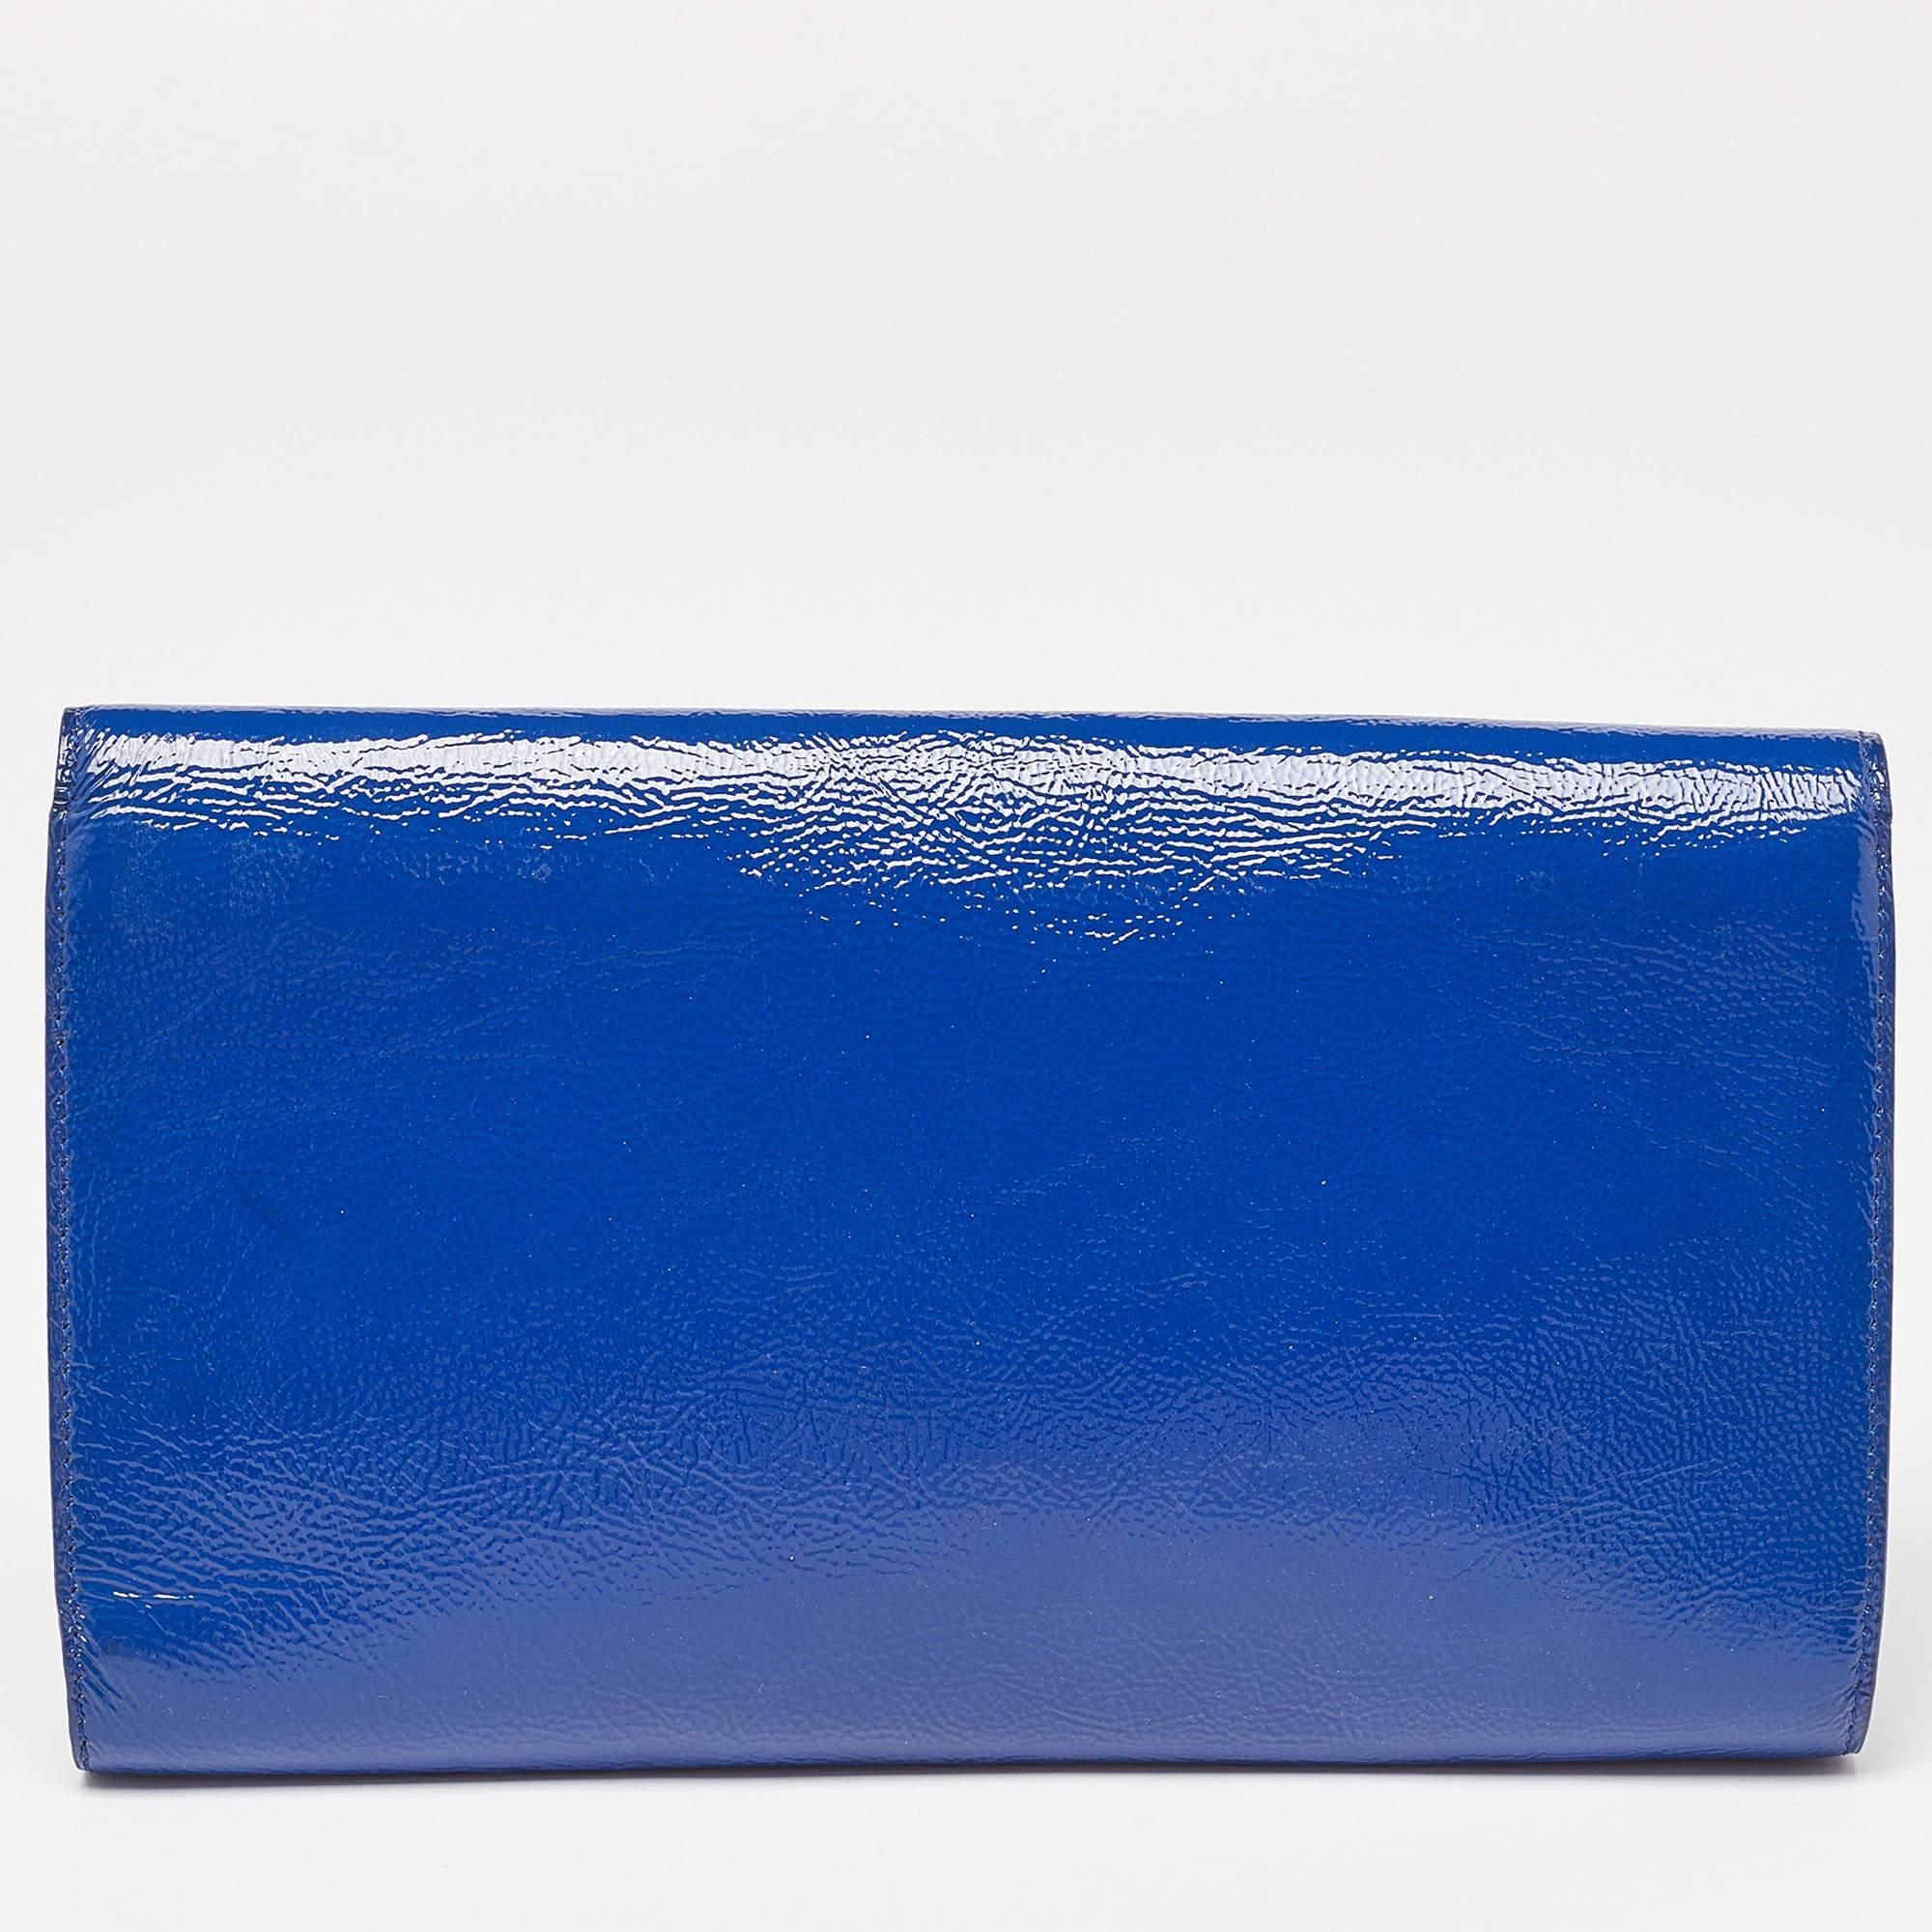 Yves Saint Laurent Blue Patent Leather Belle De Jour Flap Clutch 2